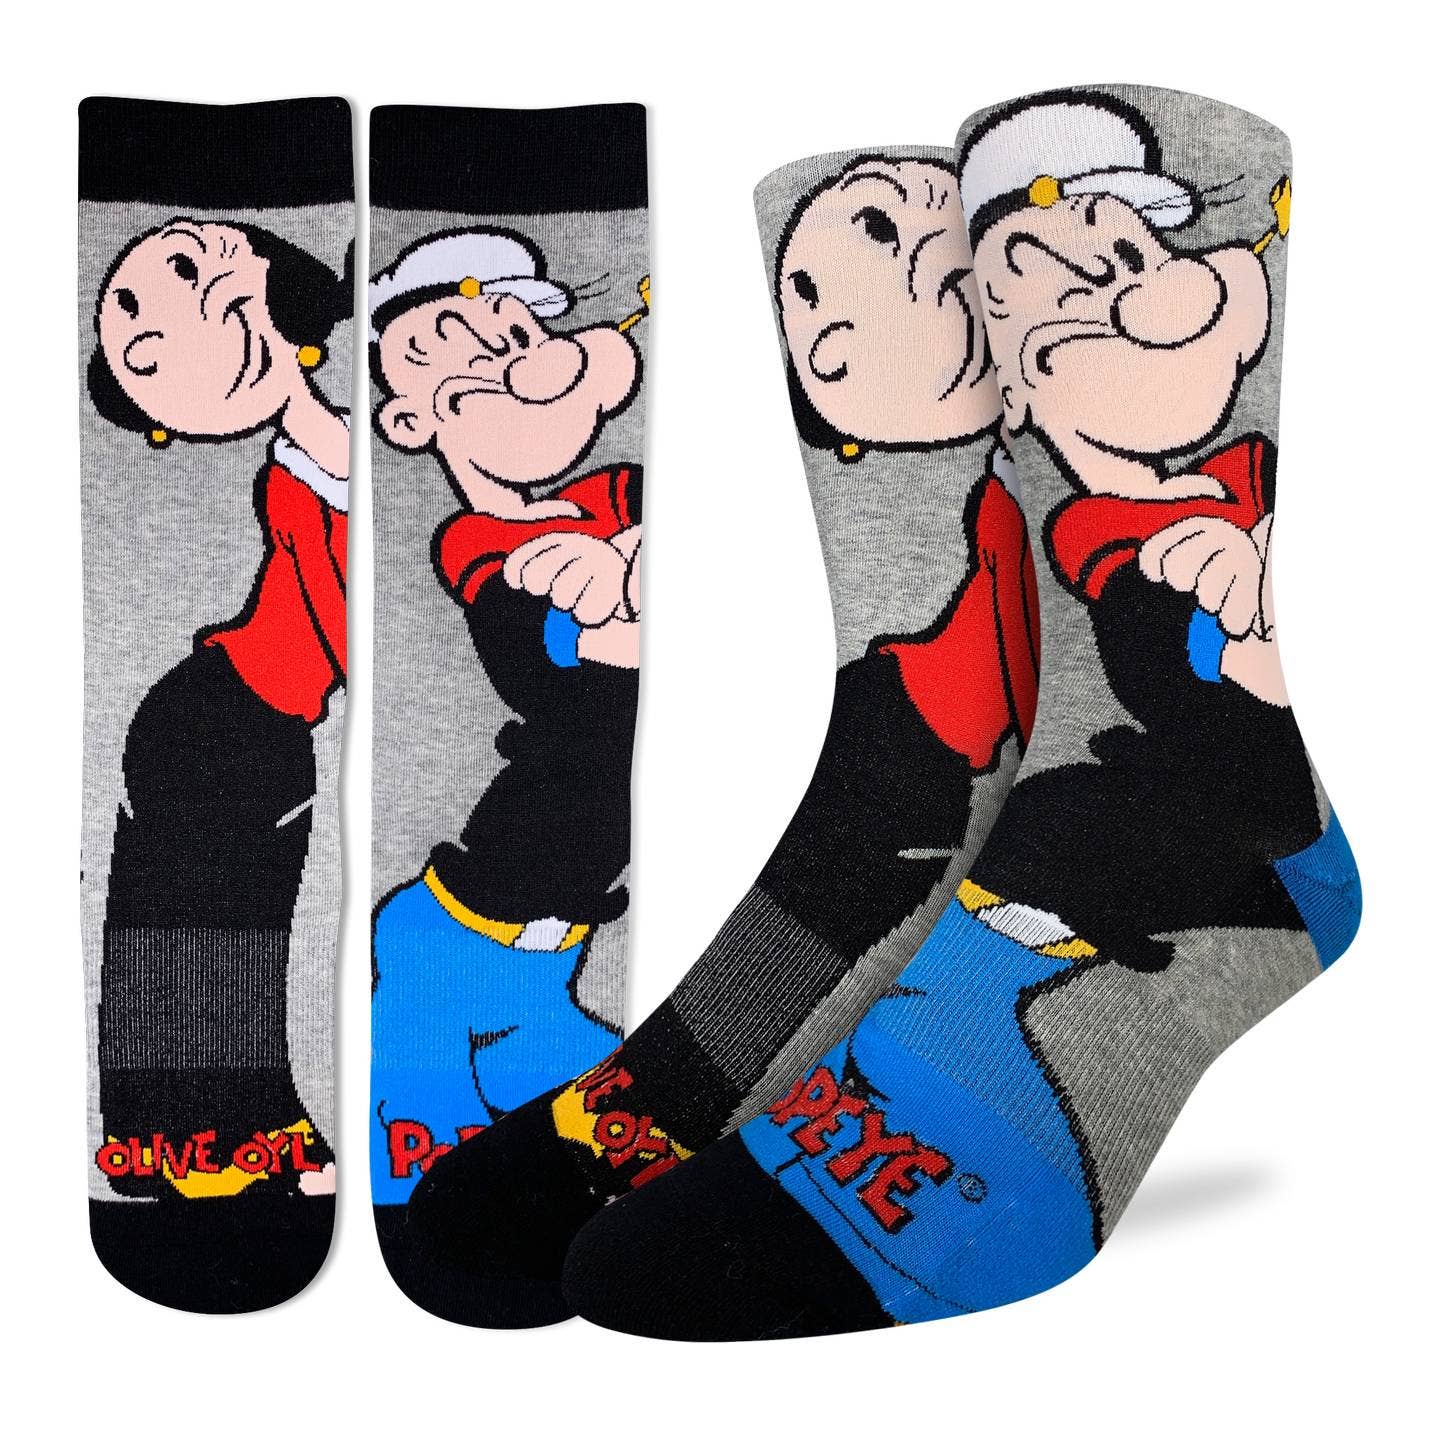 Good Luck Sock - Men's Popeye and Olive Socks